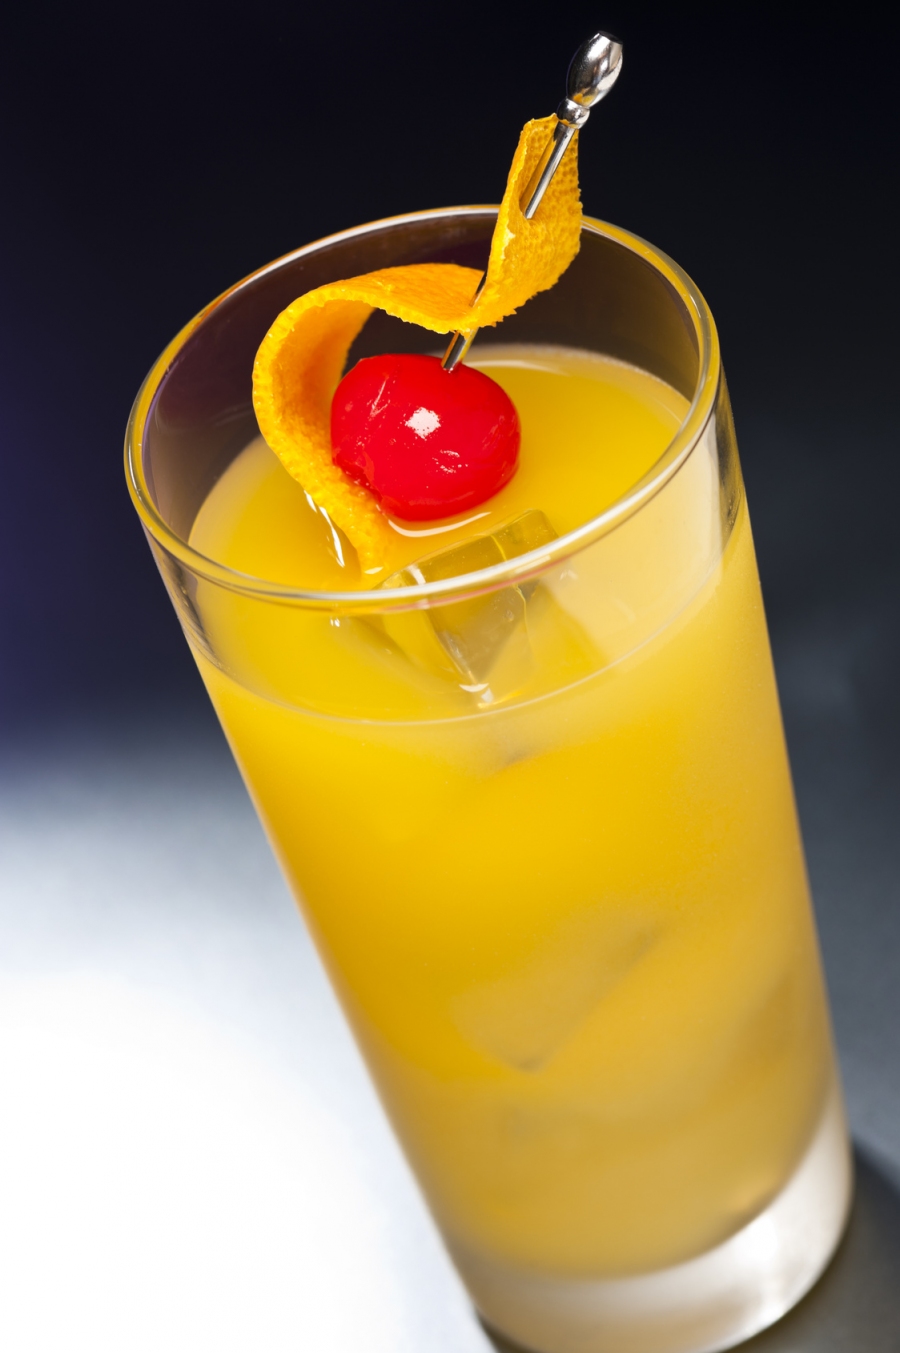 Schlammbowle: Leckere Bowle aus Orangensaft, Sekt, Wodka und Vanilleeis (Abbildung ähnlich).